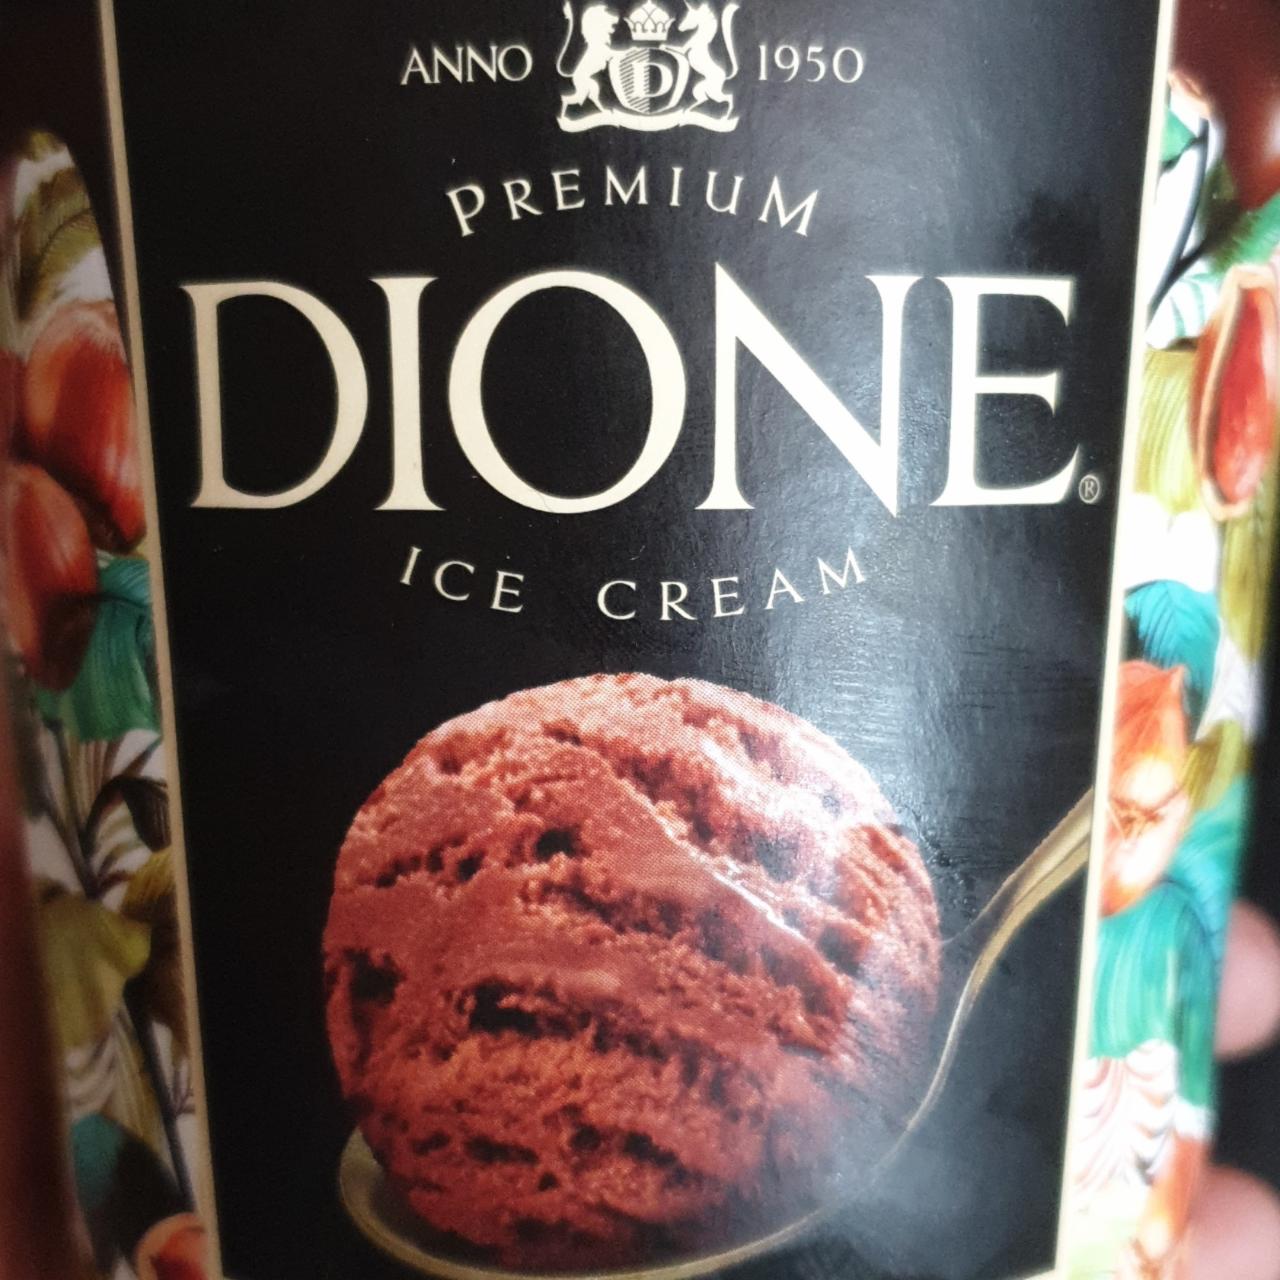 Fotografie - Premium ice cream chocolate & hazelnut Premium Dione Ice Cream